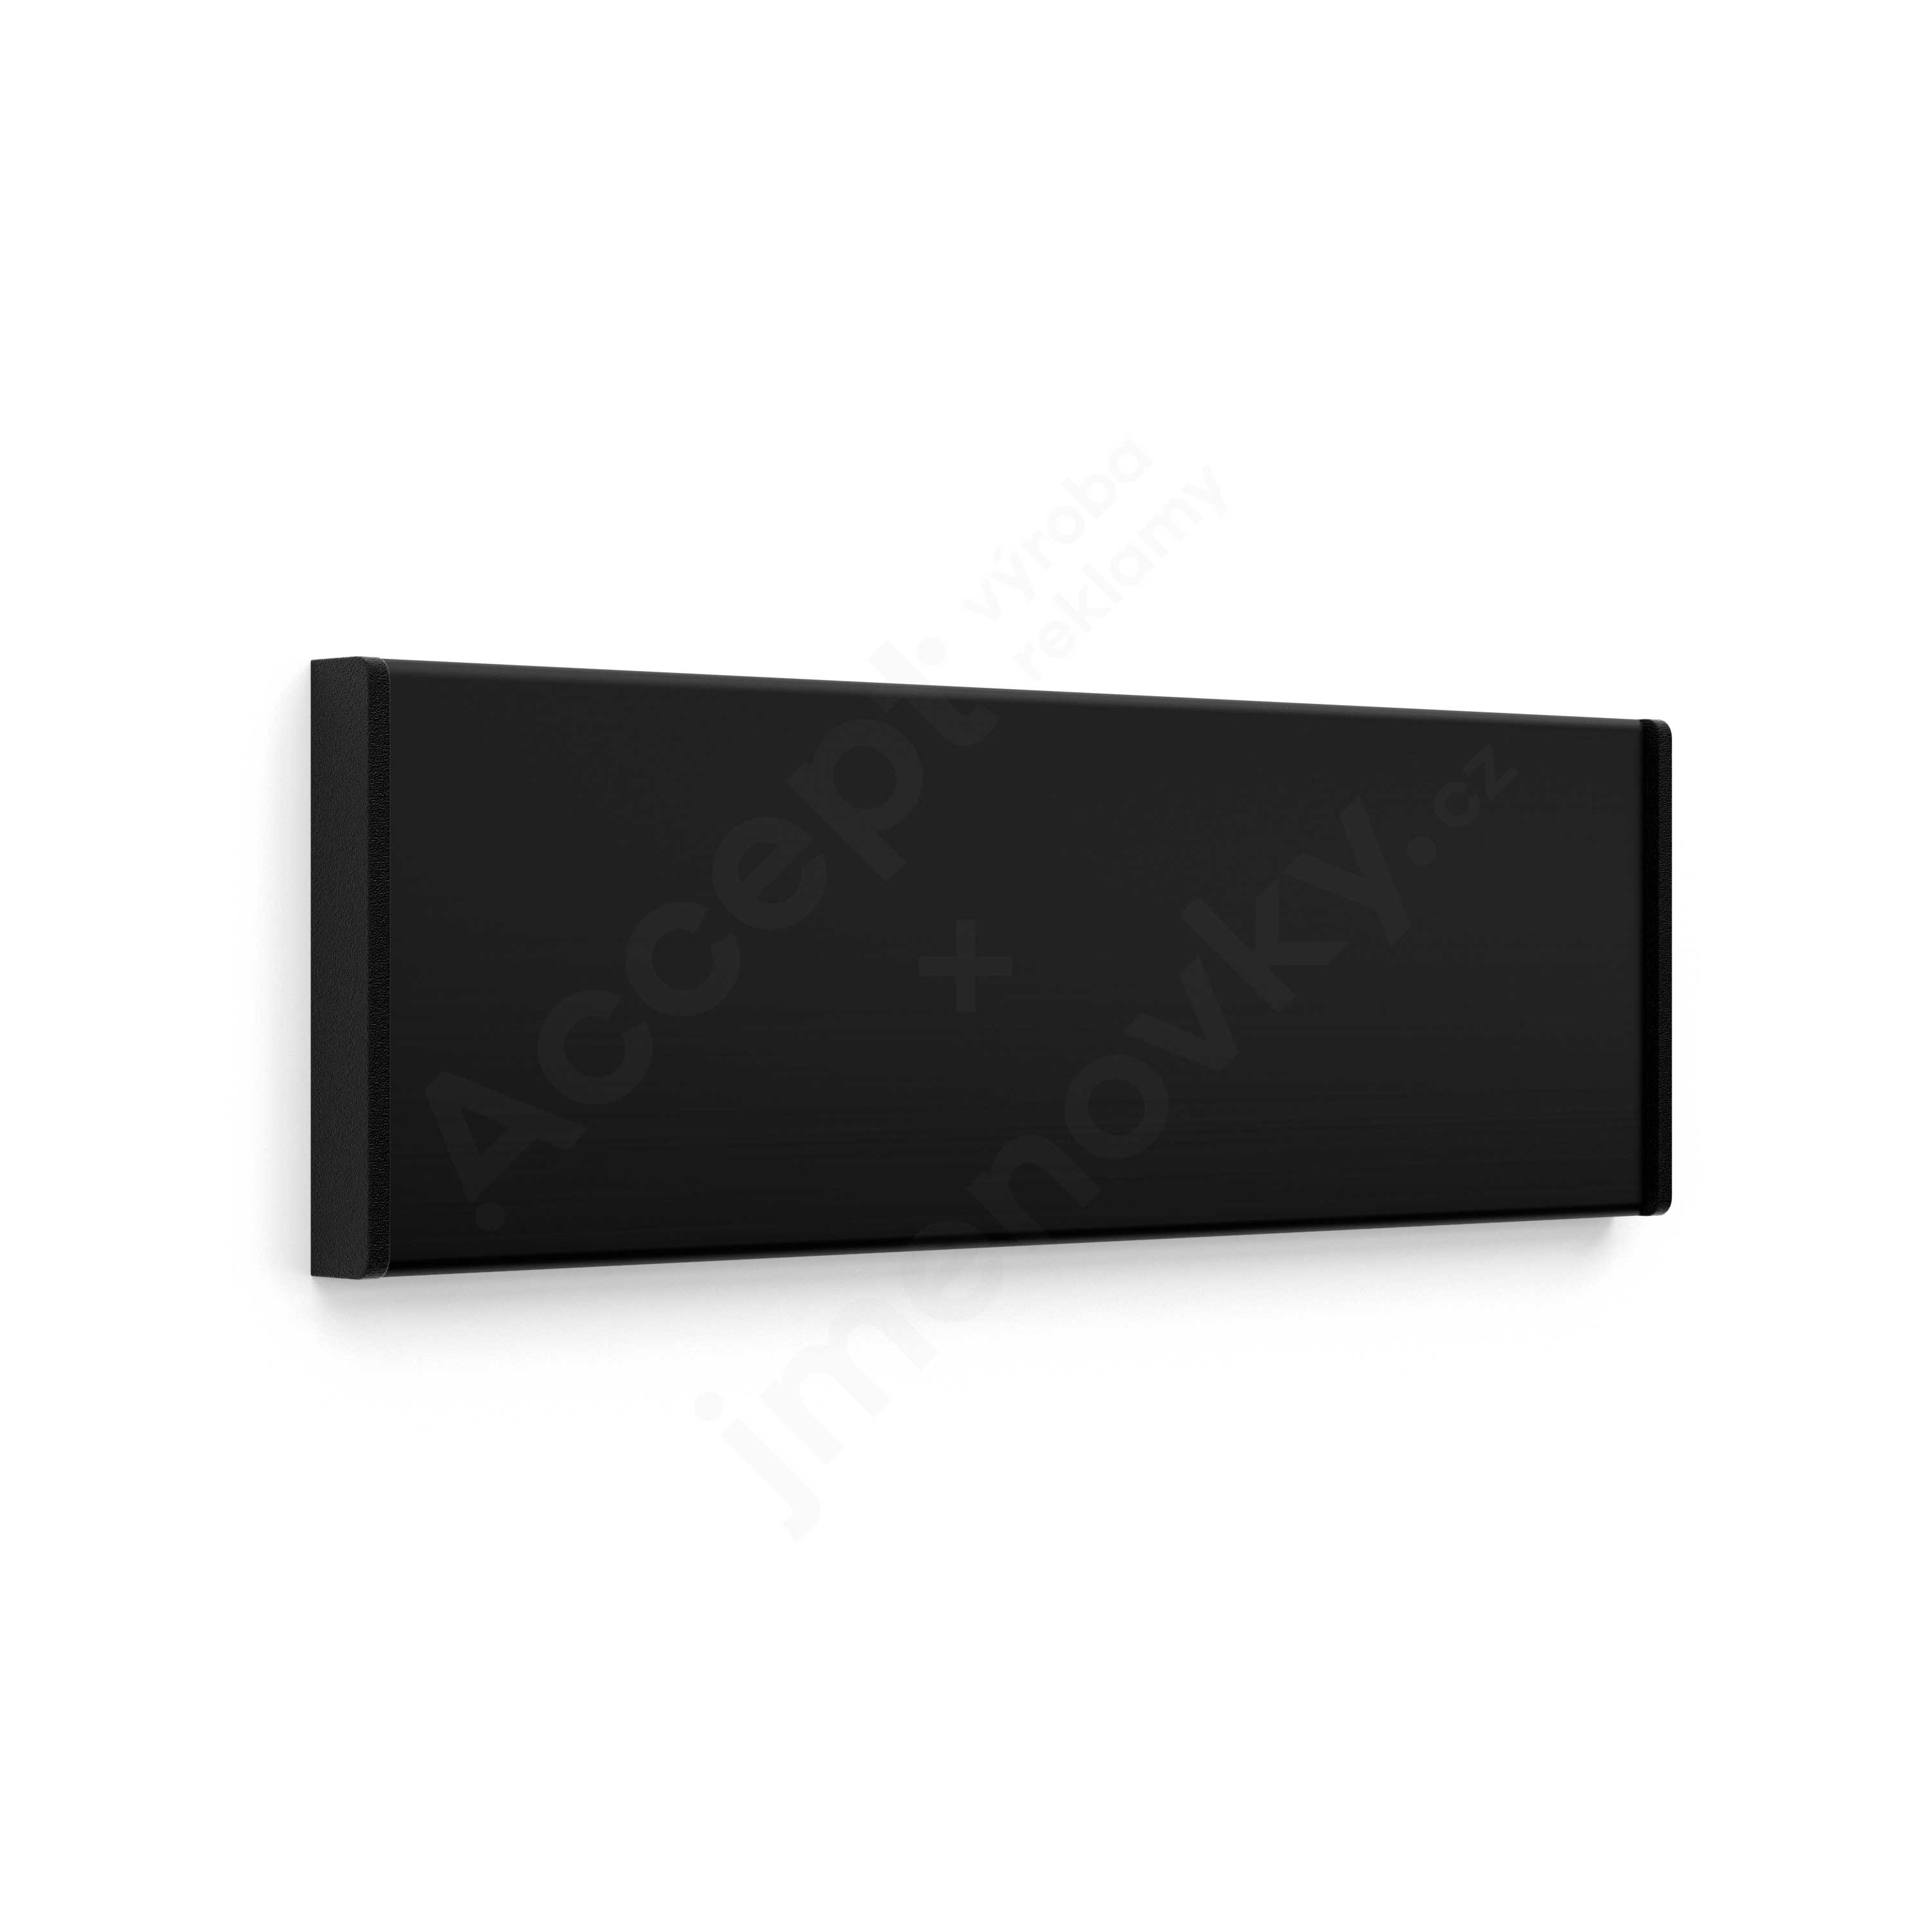 Dveřní tabulka ACS černá (nezásuvný systém, 187 x 62 mm)